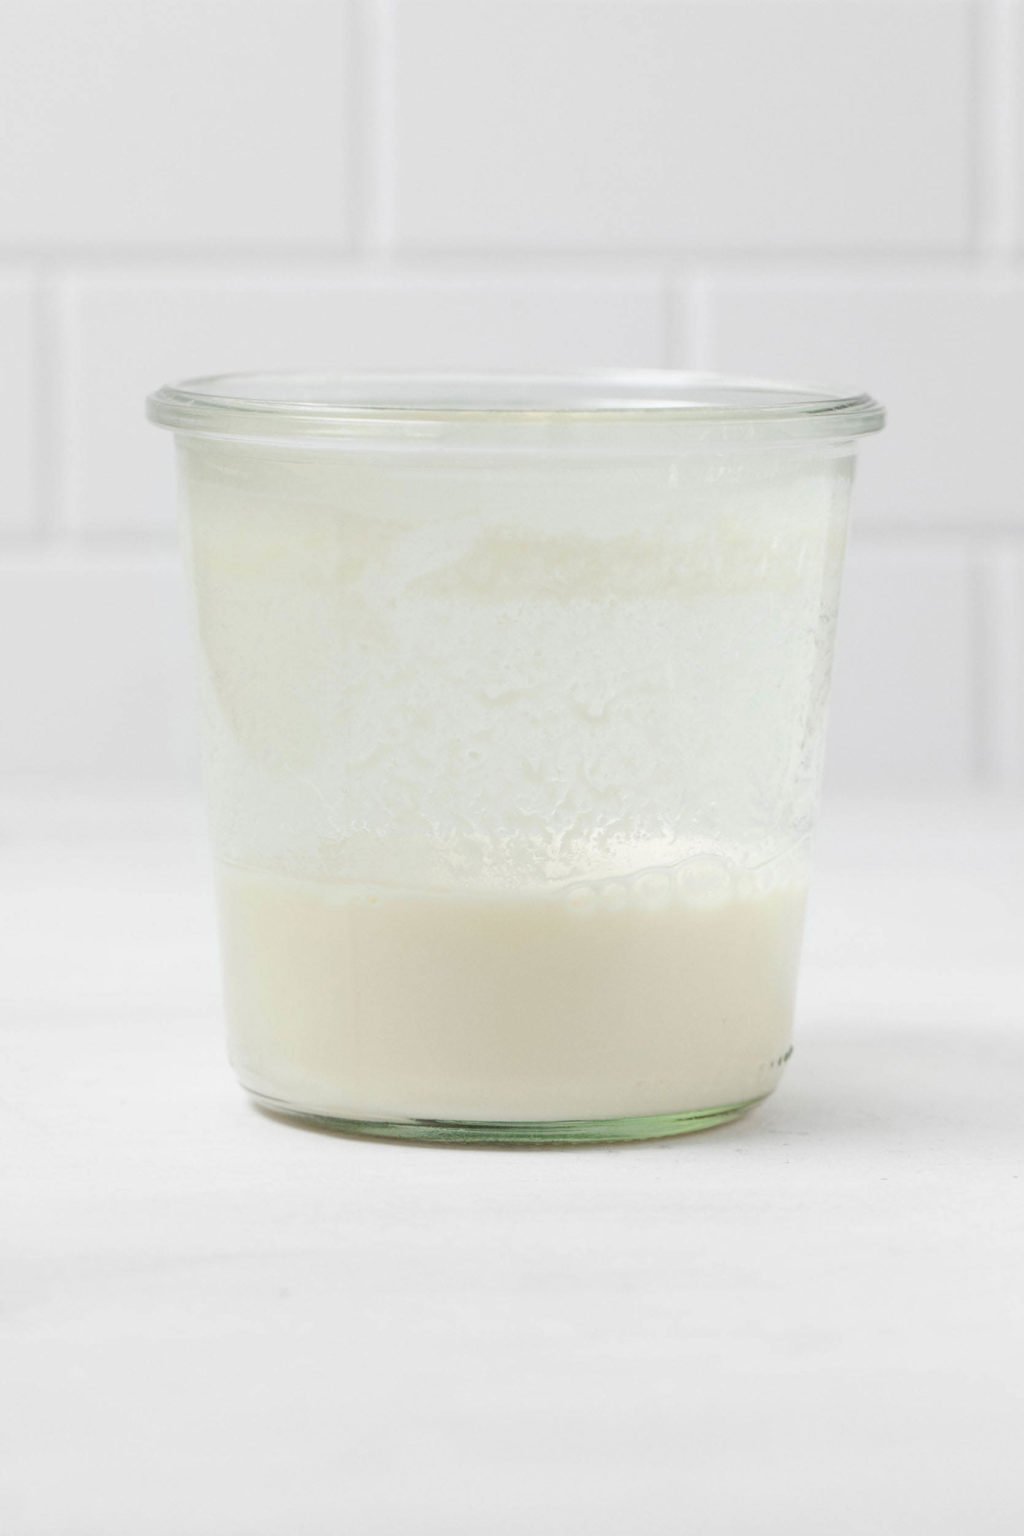 Una botella de vidrio de suero de leche vegano casero descansa sobre una superficie cremosa.